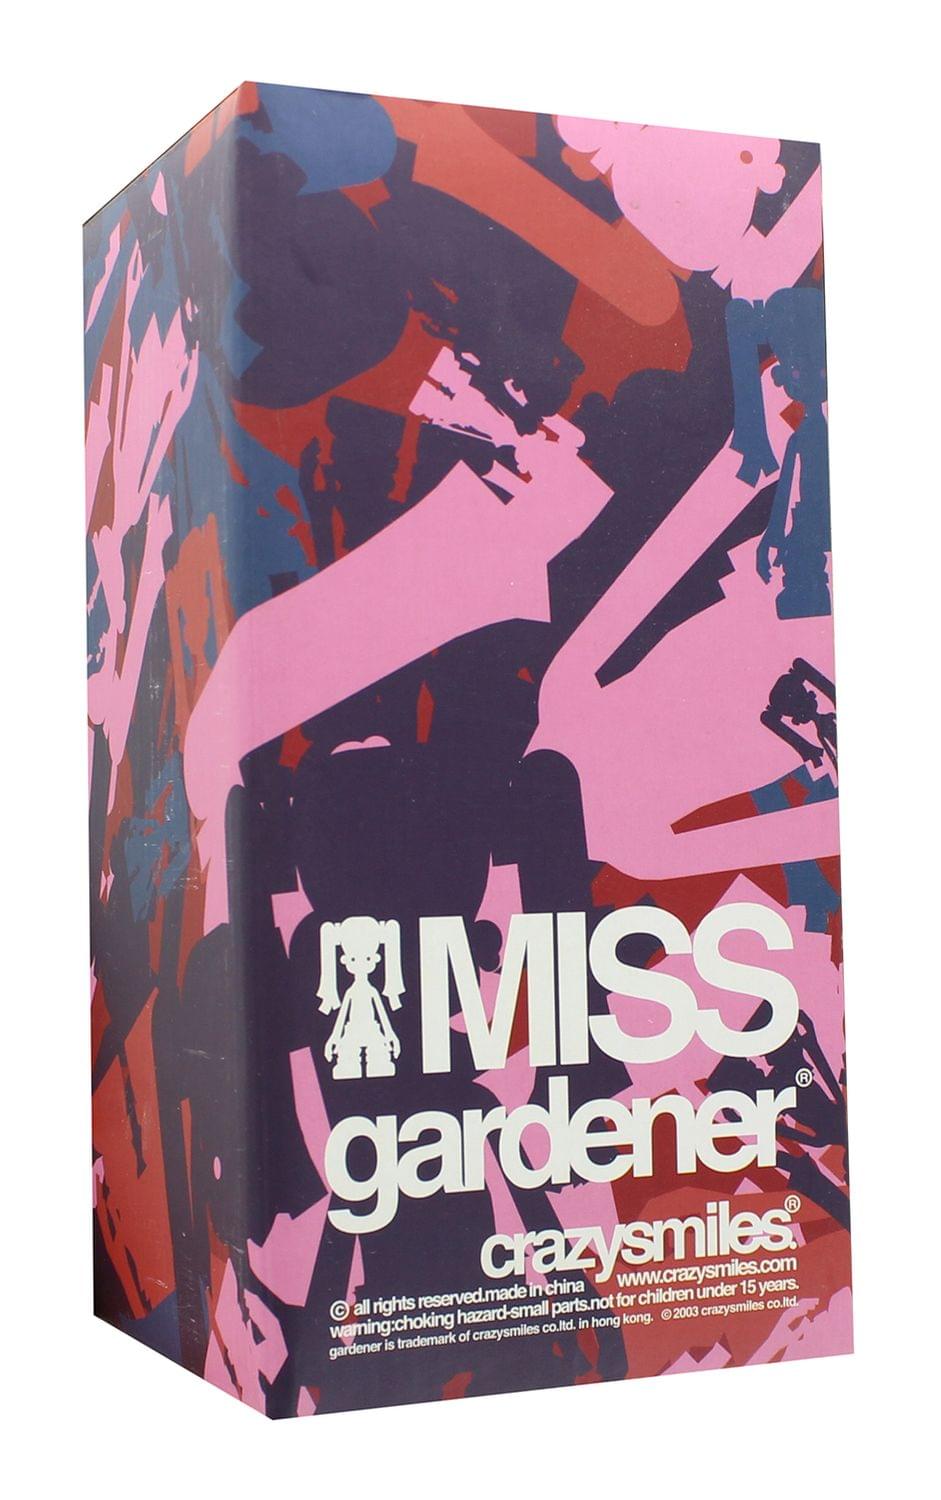 Crazysmile Gardener MISS 6 Inch Michael Lau Designer Vinyl Figure